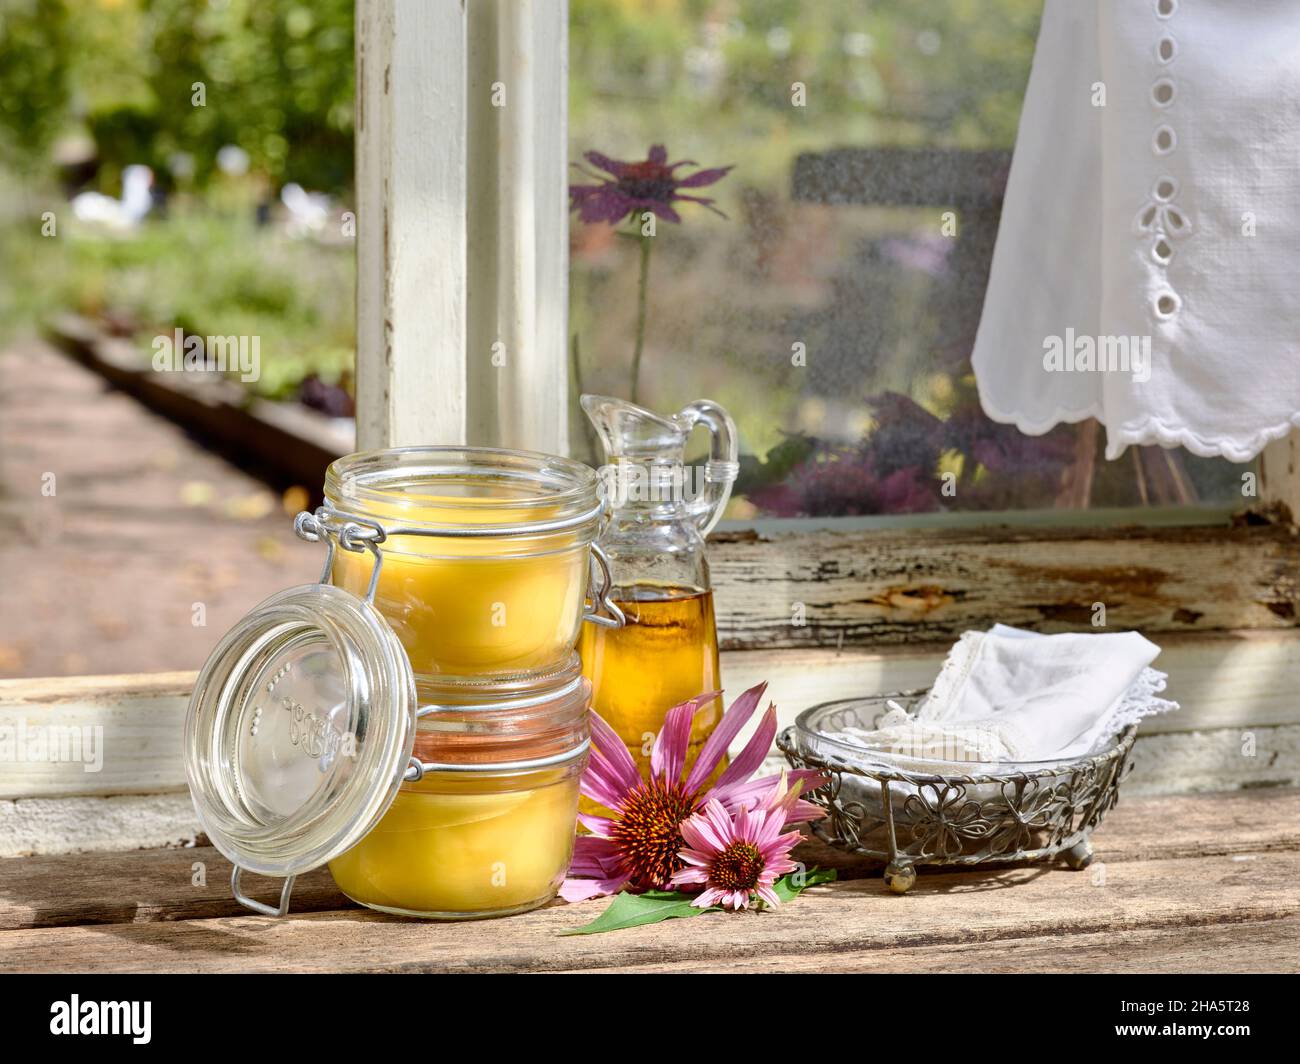 Zwei mit Echinacea-Salbe gefüllte Vorratsgläser und eine Glaskaraffe aus Pflanzenöl stehen zusammen mit einem Metallkorb und textilen Taschentüchern auf einem Holztisch vor einem Werkstattfenster Stockfoto